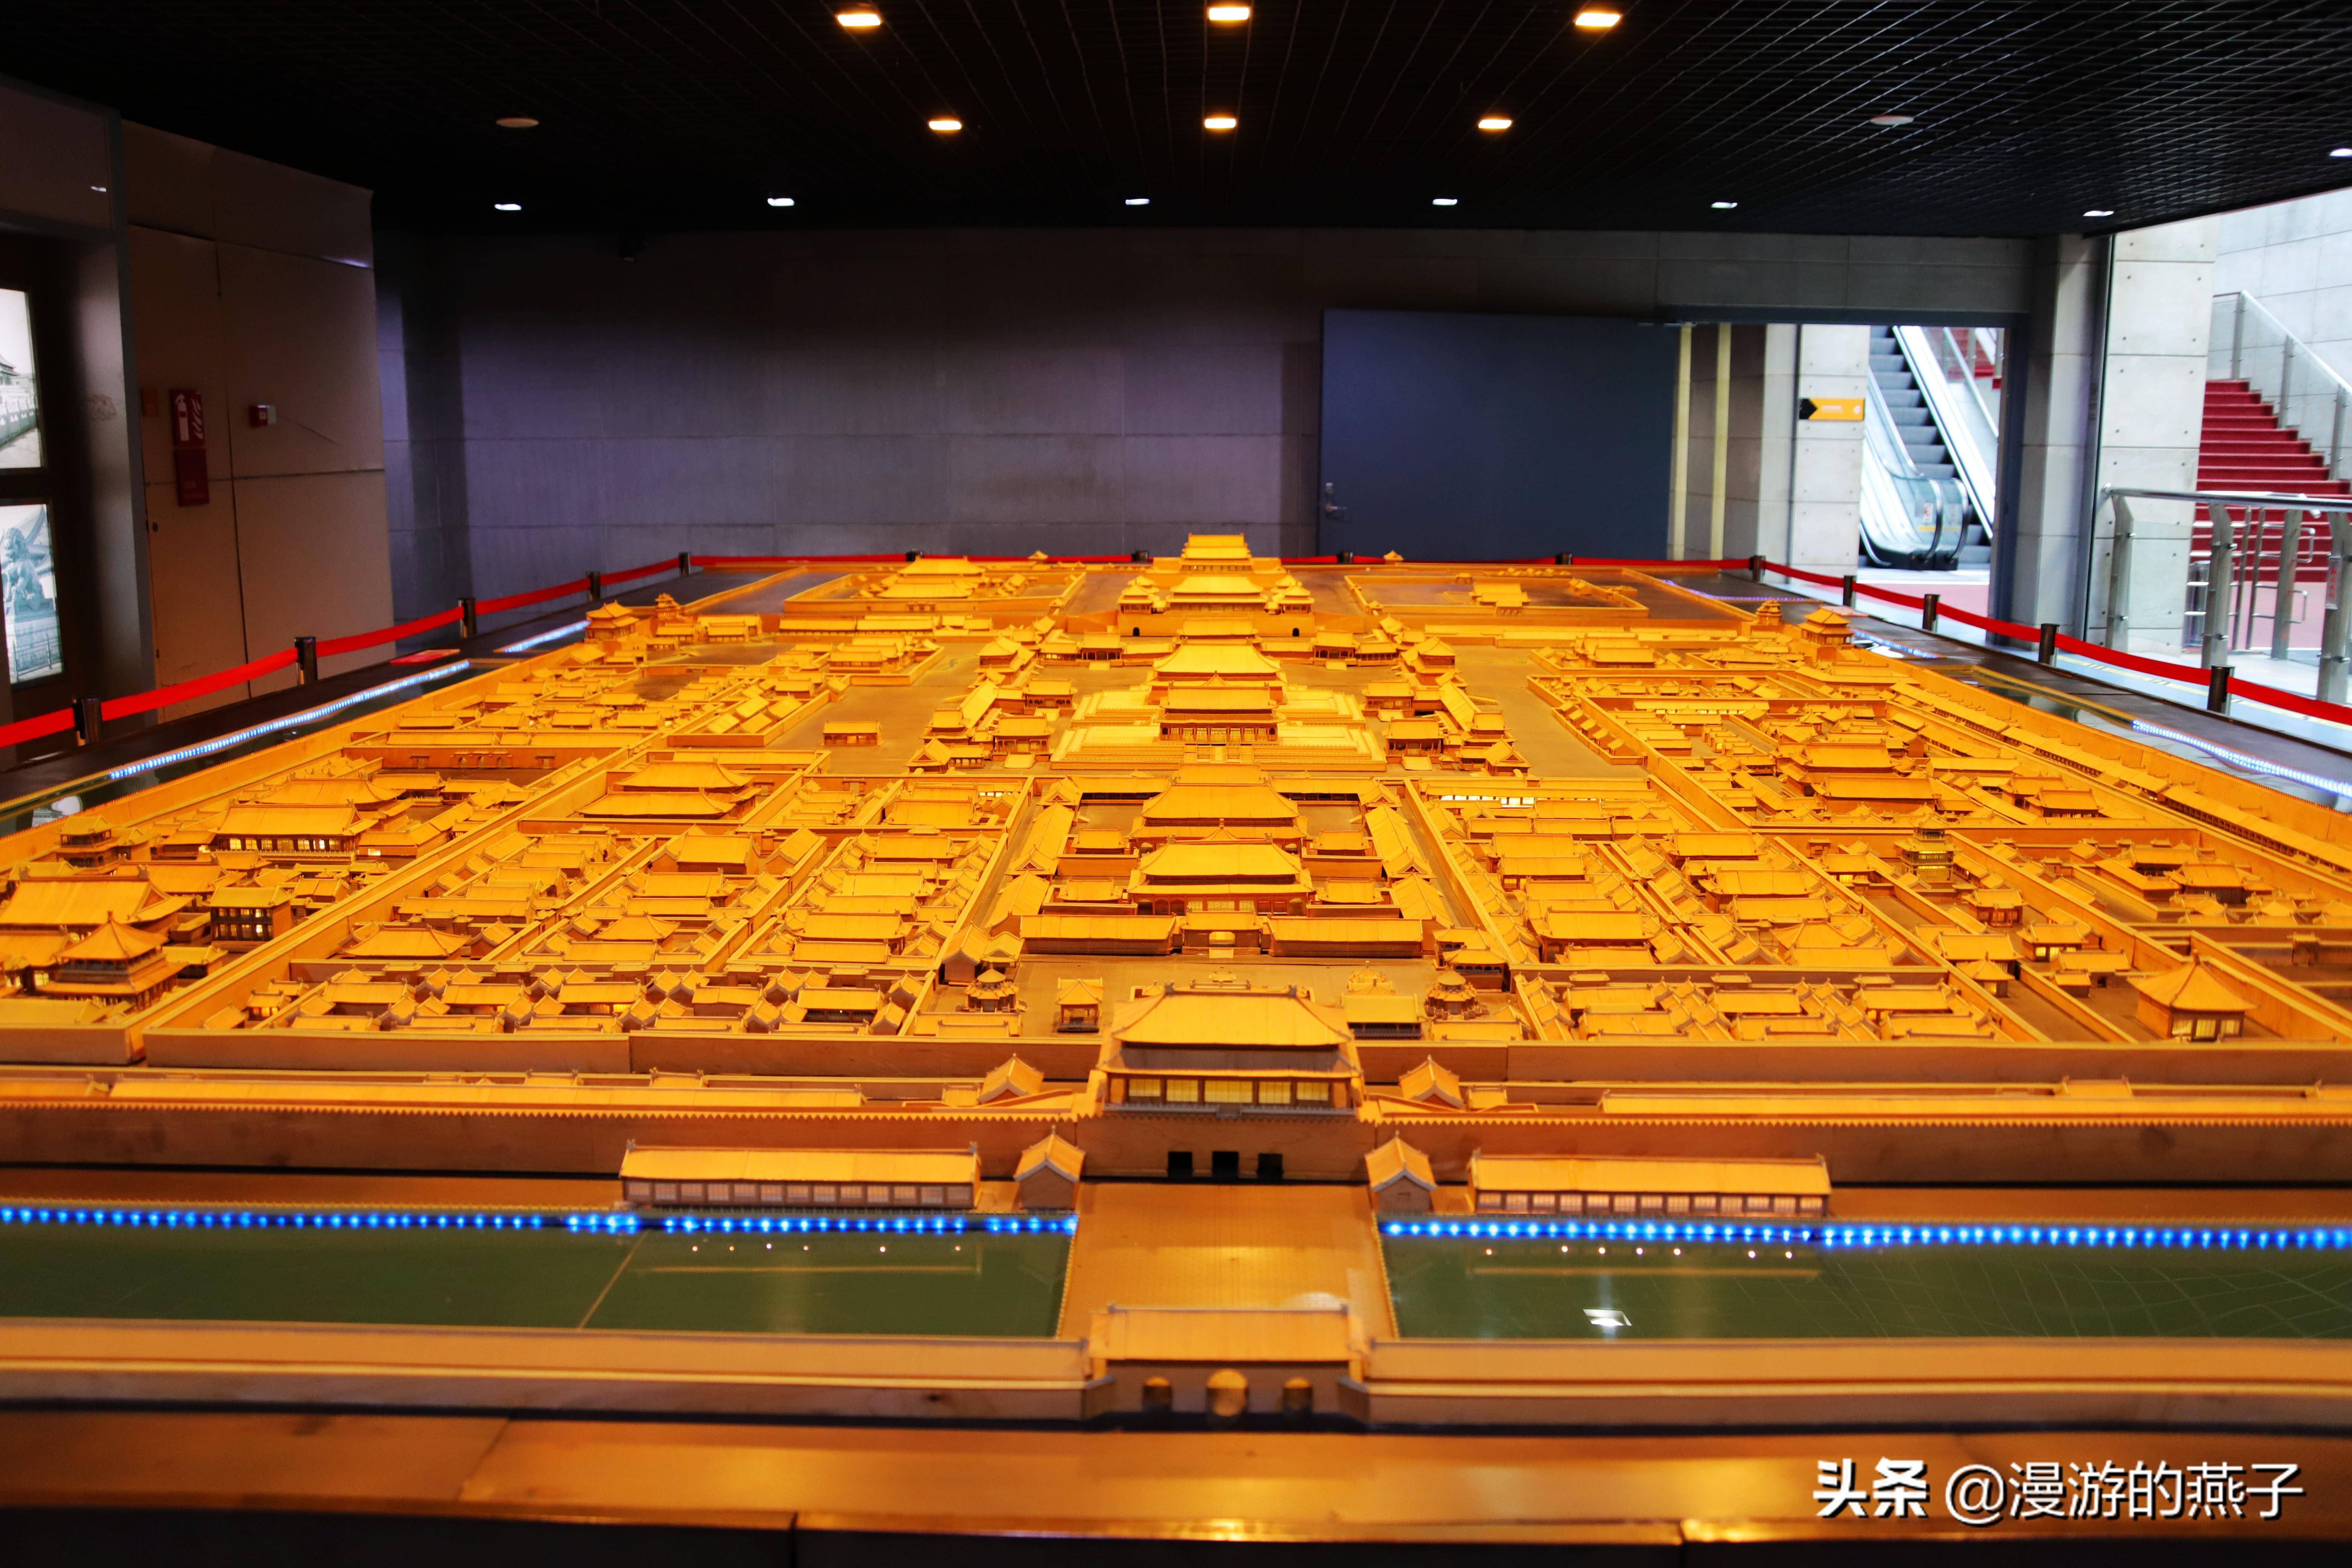 北京市城市规划展览馆图片